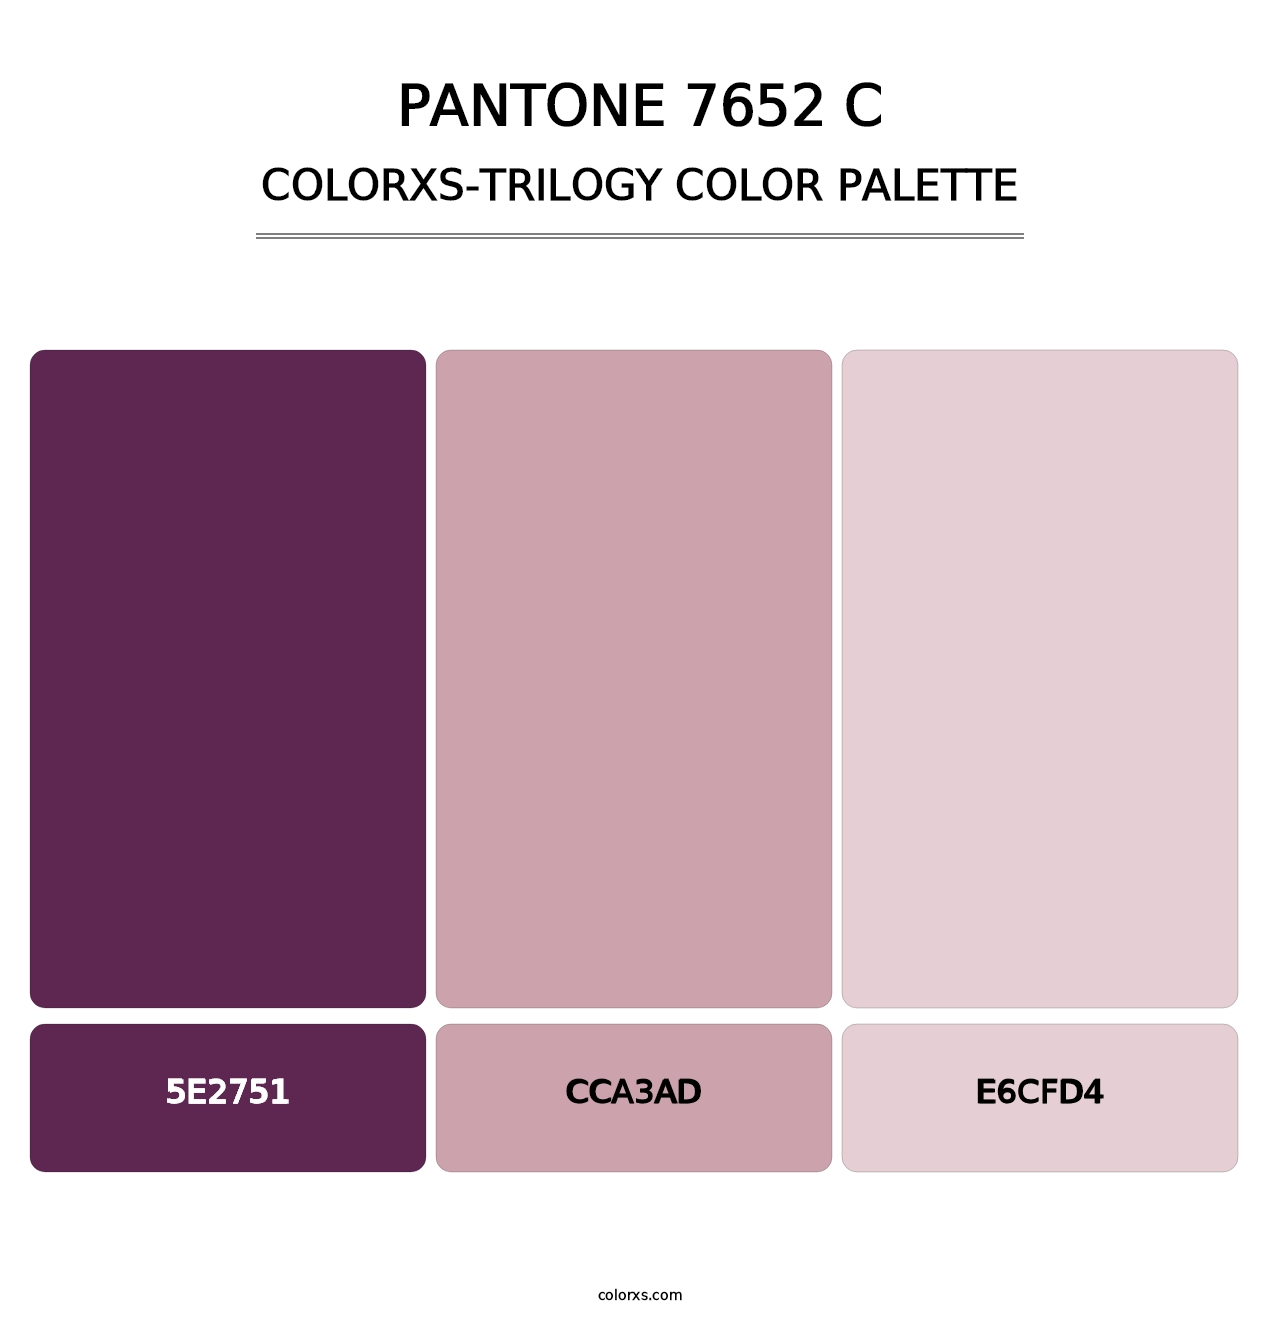 PANTONE 7652 C - Colorxs Trilogy Palette